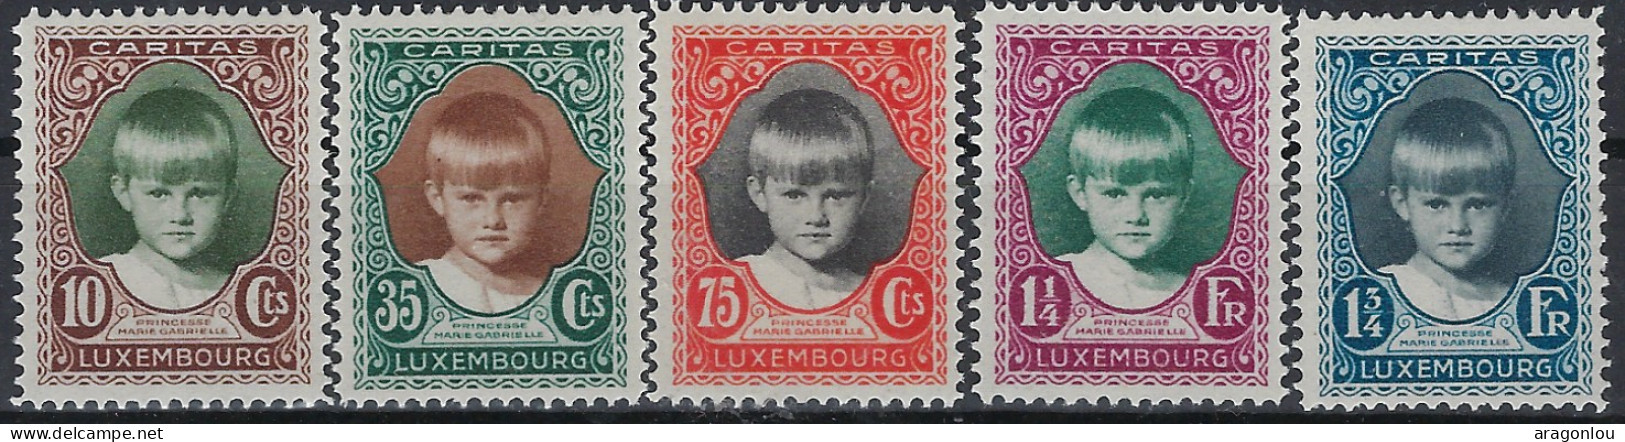 Luxembourg - Luxemburg - Timbre Série 1929   Princesse Marie-Gabrielle   MNH** - Gebruikt